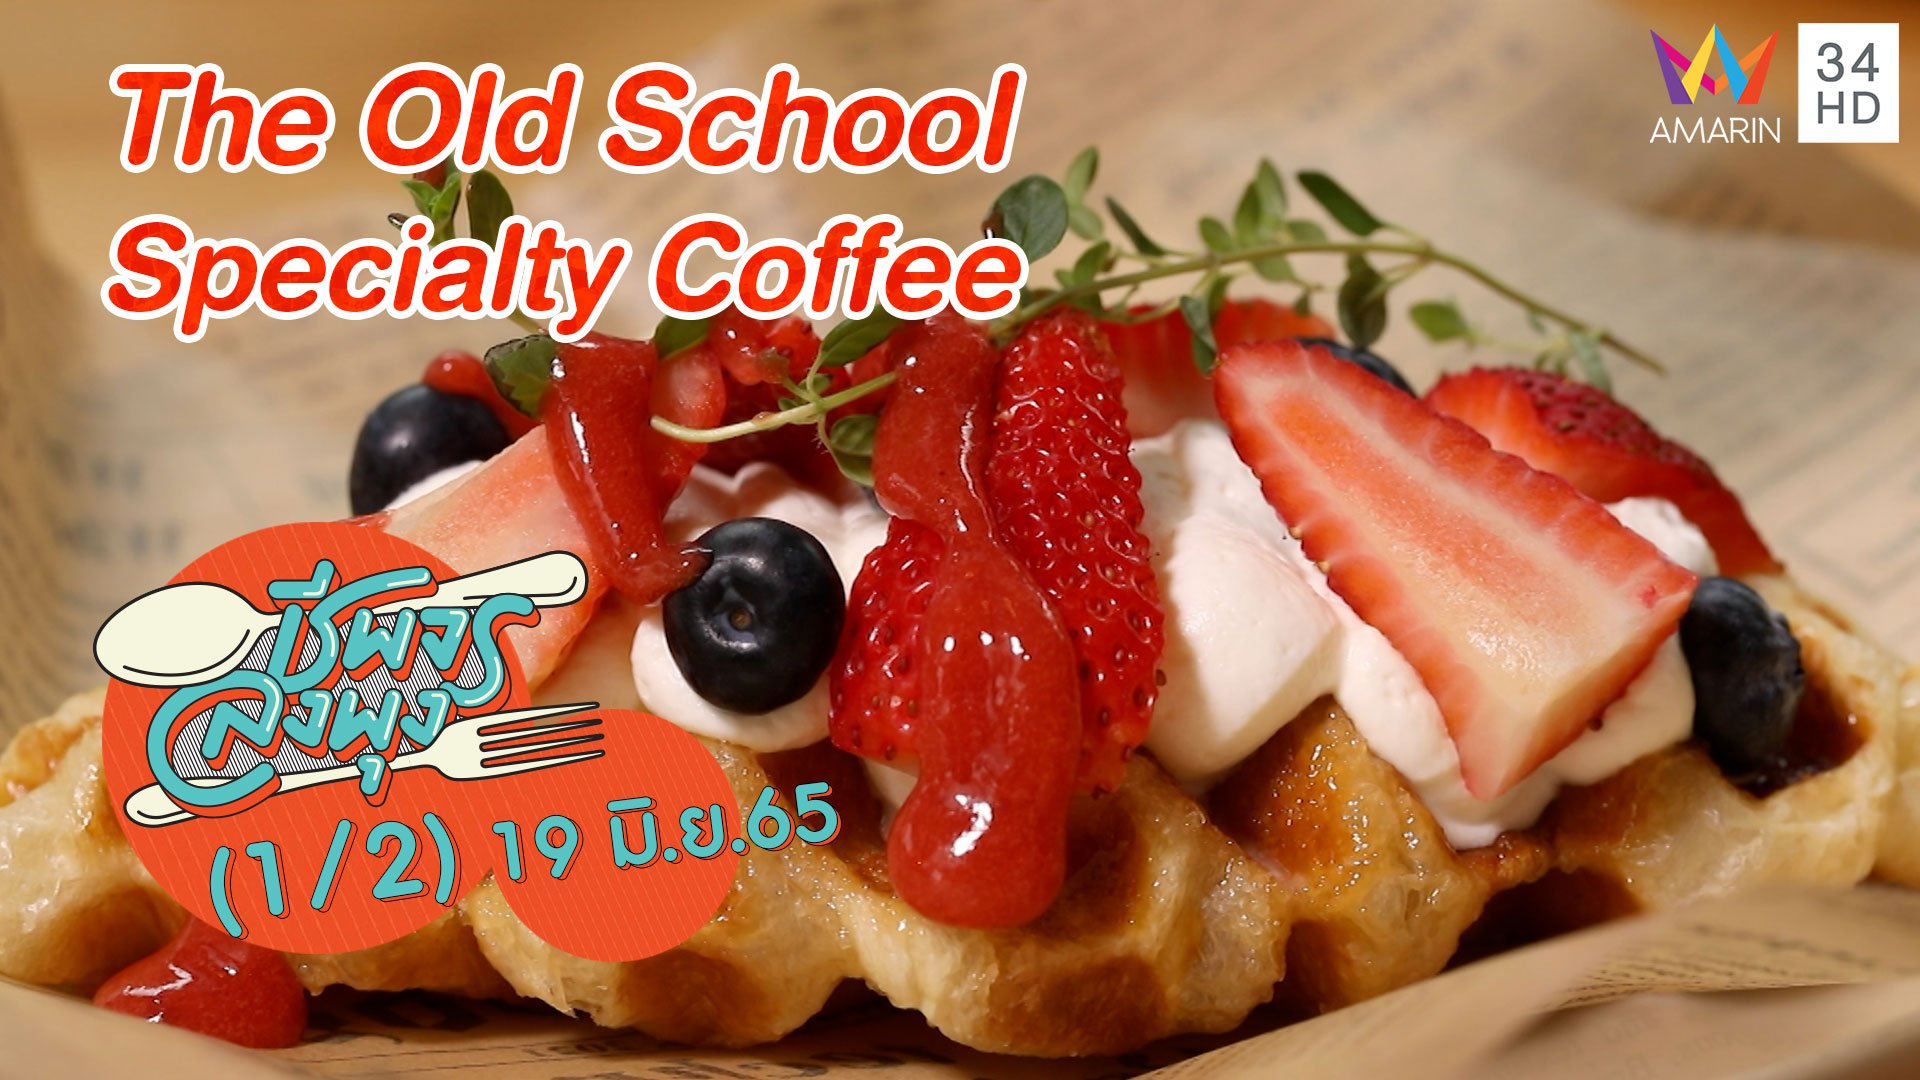 ถูกใจคอกาแฟ @ The Old School Specialty Coffee | ชีพจรลงพุง | 19 มิ.ย. 65 (1/2) | AMARIN TVHD34